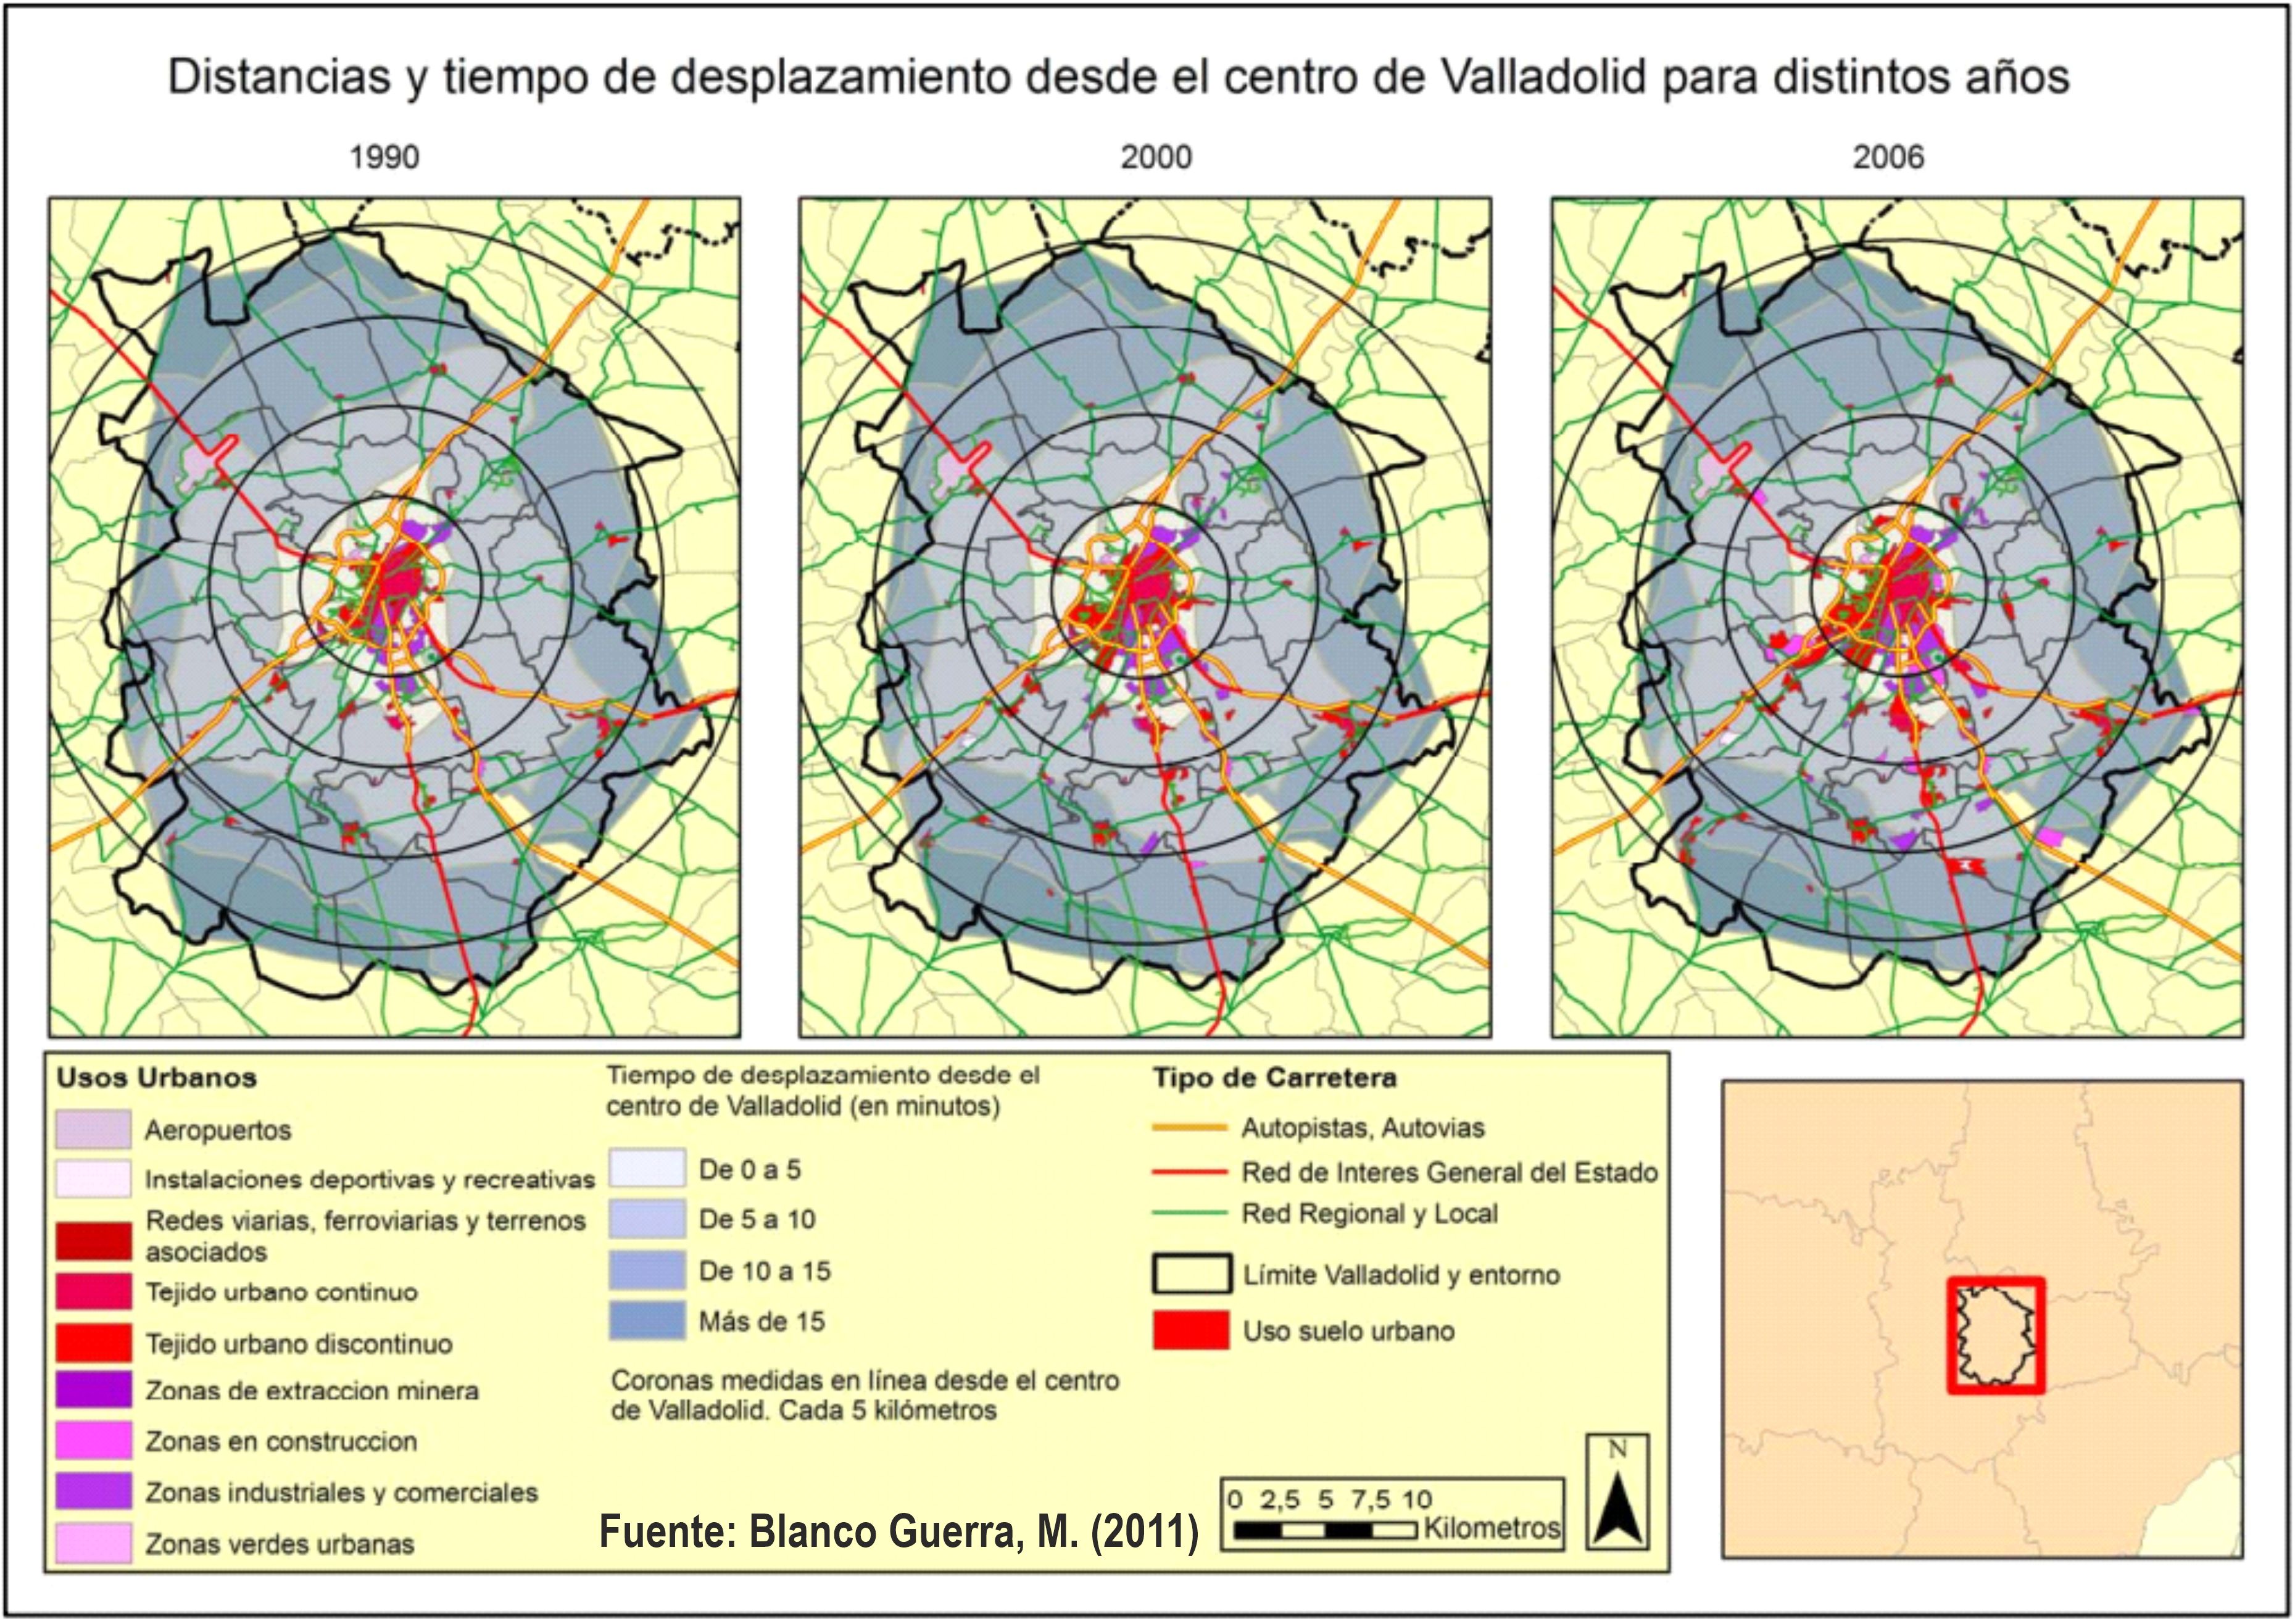 Aplicación de índices para la cuantificación del “urban sprawl” en Valladolid y su entorno. Blanco Guerra, M. (2011). Trabajo Fin de Máster. https://eprints.ucm.es/14002/